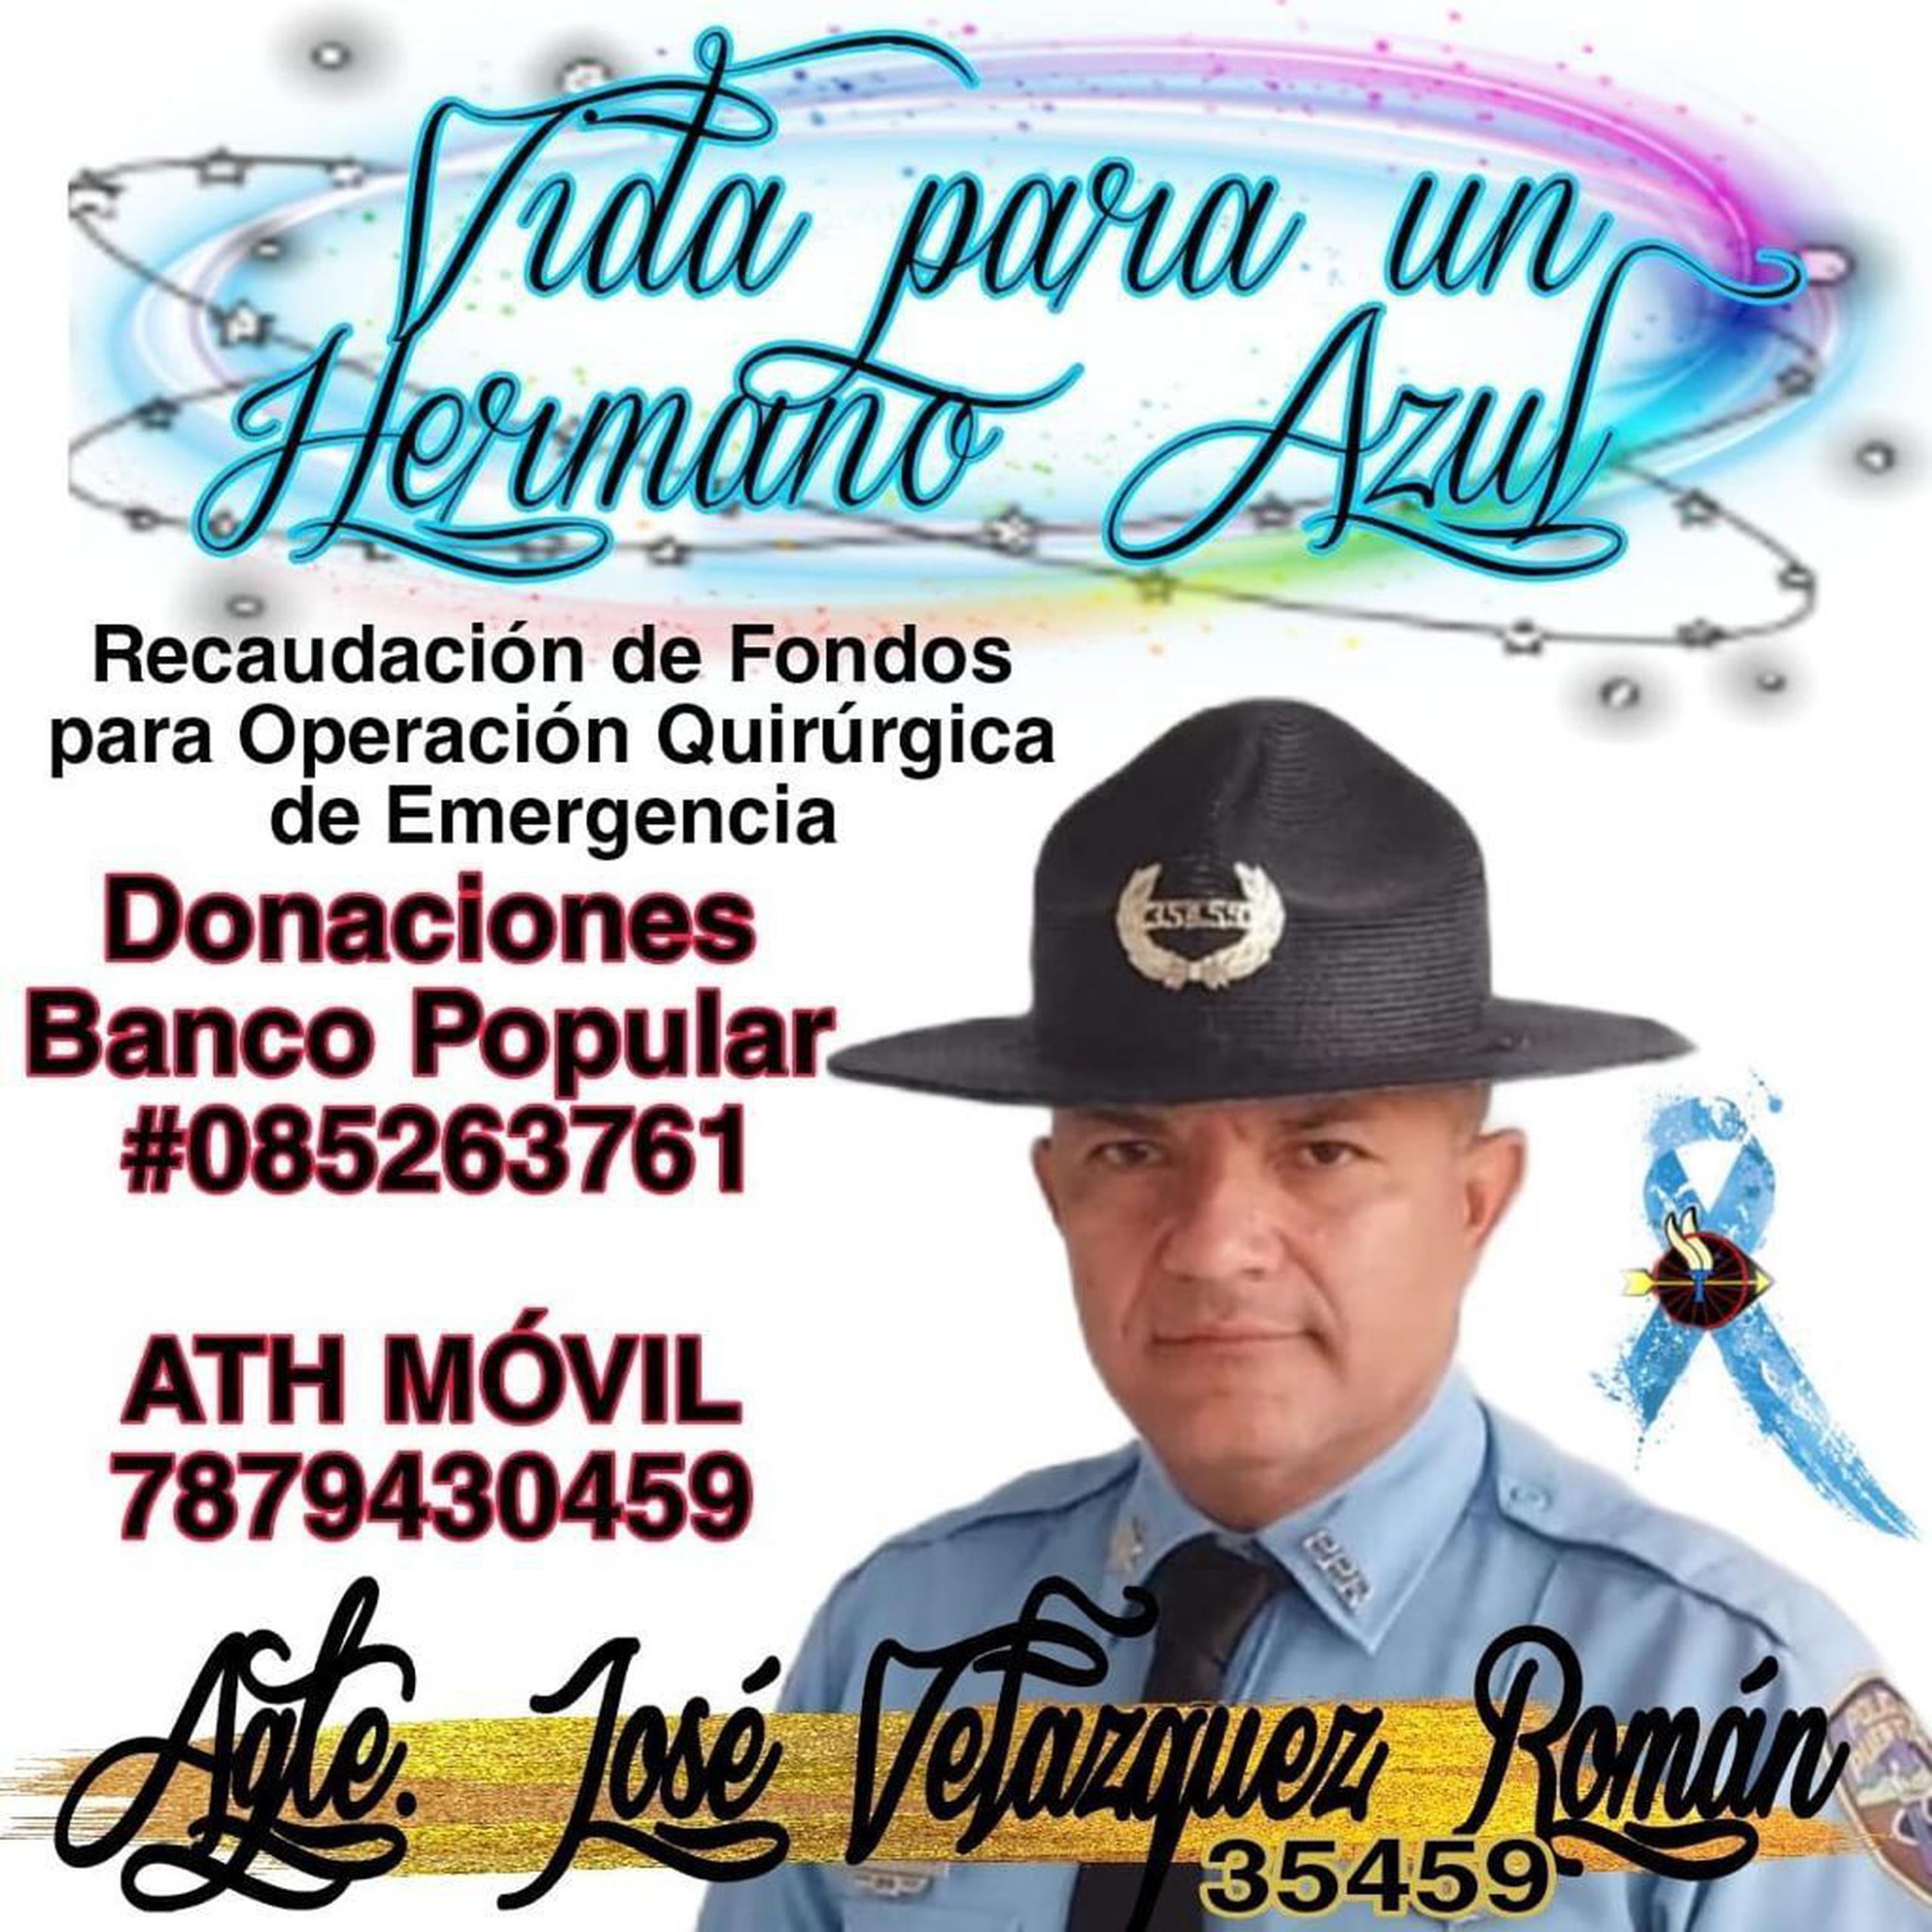 Se solicitan donaciones para el agente José Velázquez Román, quien tendrá que ser sometido a una cirugía en un hospital en Miami tras ser diagnosticado con cáncer.